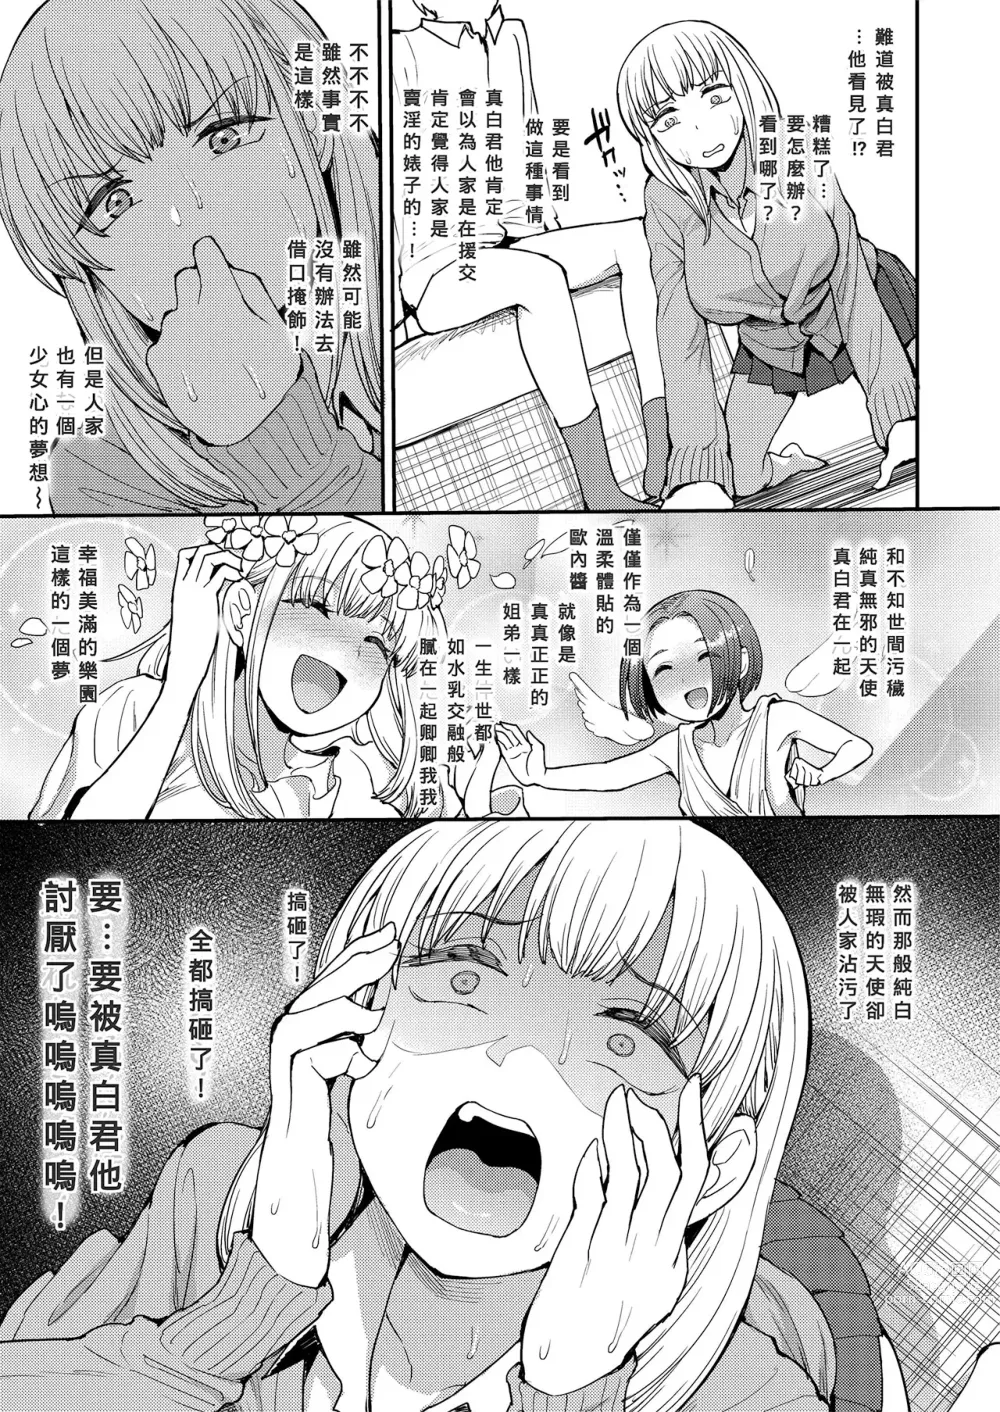 Page 5 of manga こっちむいてよ